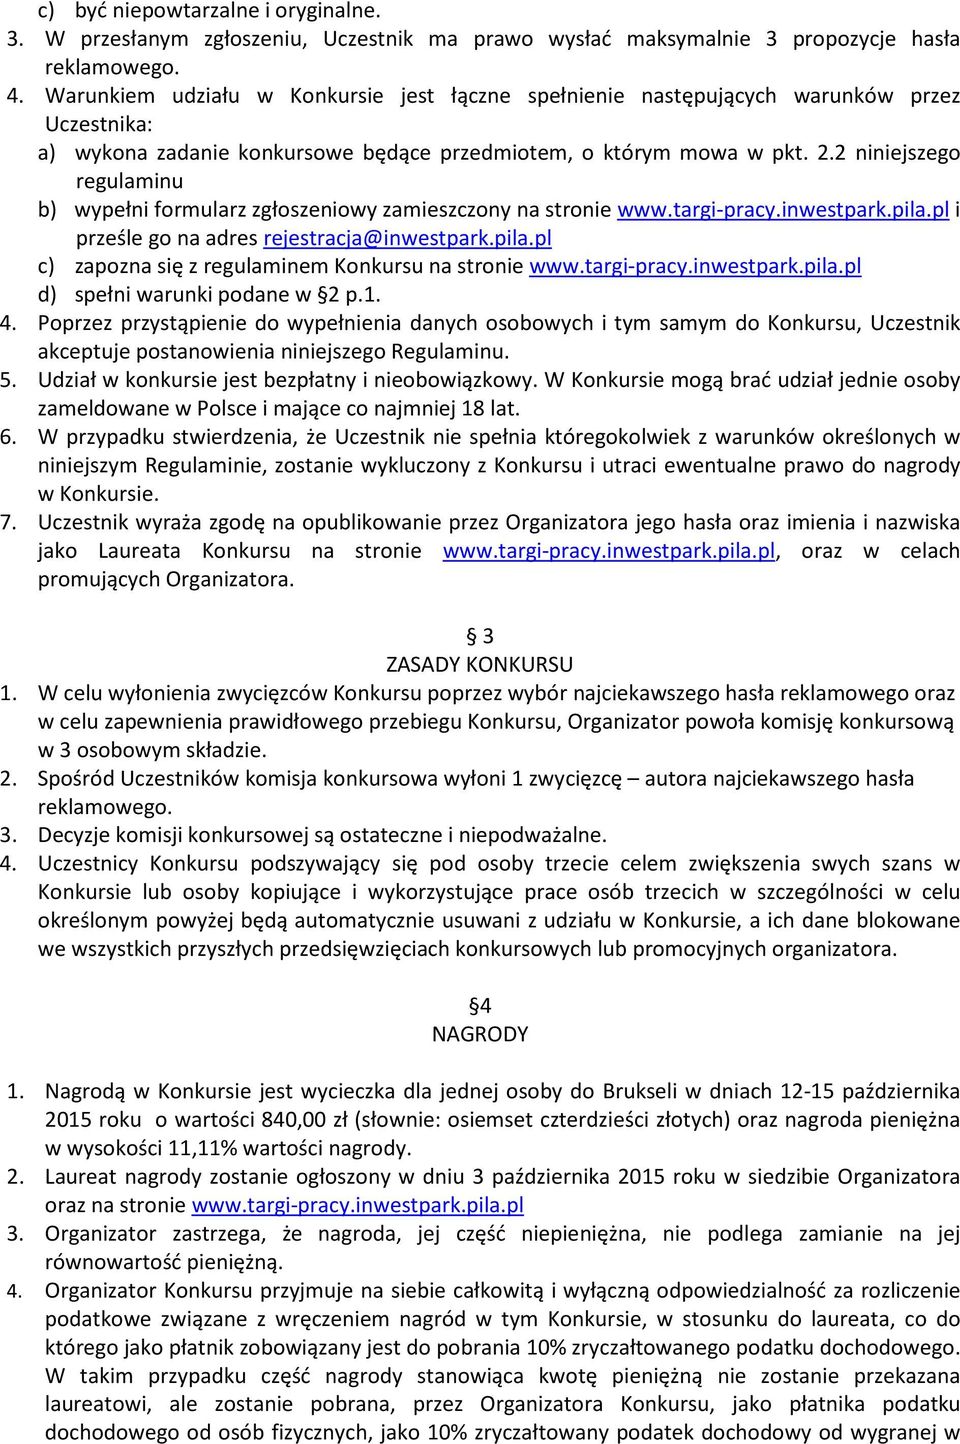 2 niniejszego regulaminu b) wypełni formularz zgłoszeniowy zamieszczony na stronie www.targi-pracy.inwestpark.pila.pl i prześle go na adres rejestracja@inwestpark.pila.pl c) zapozna się z regulaminem Konkursu na stronie www.